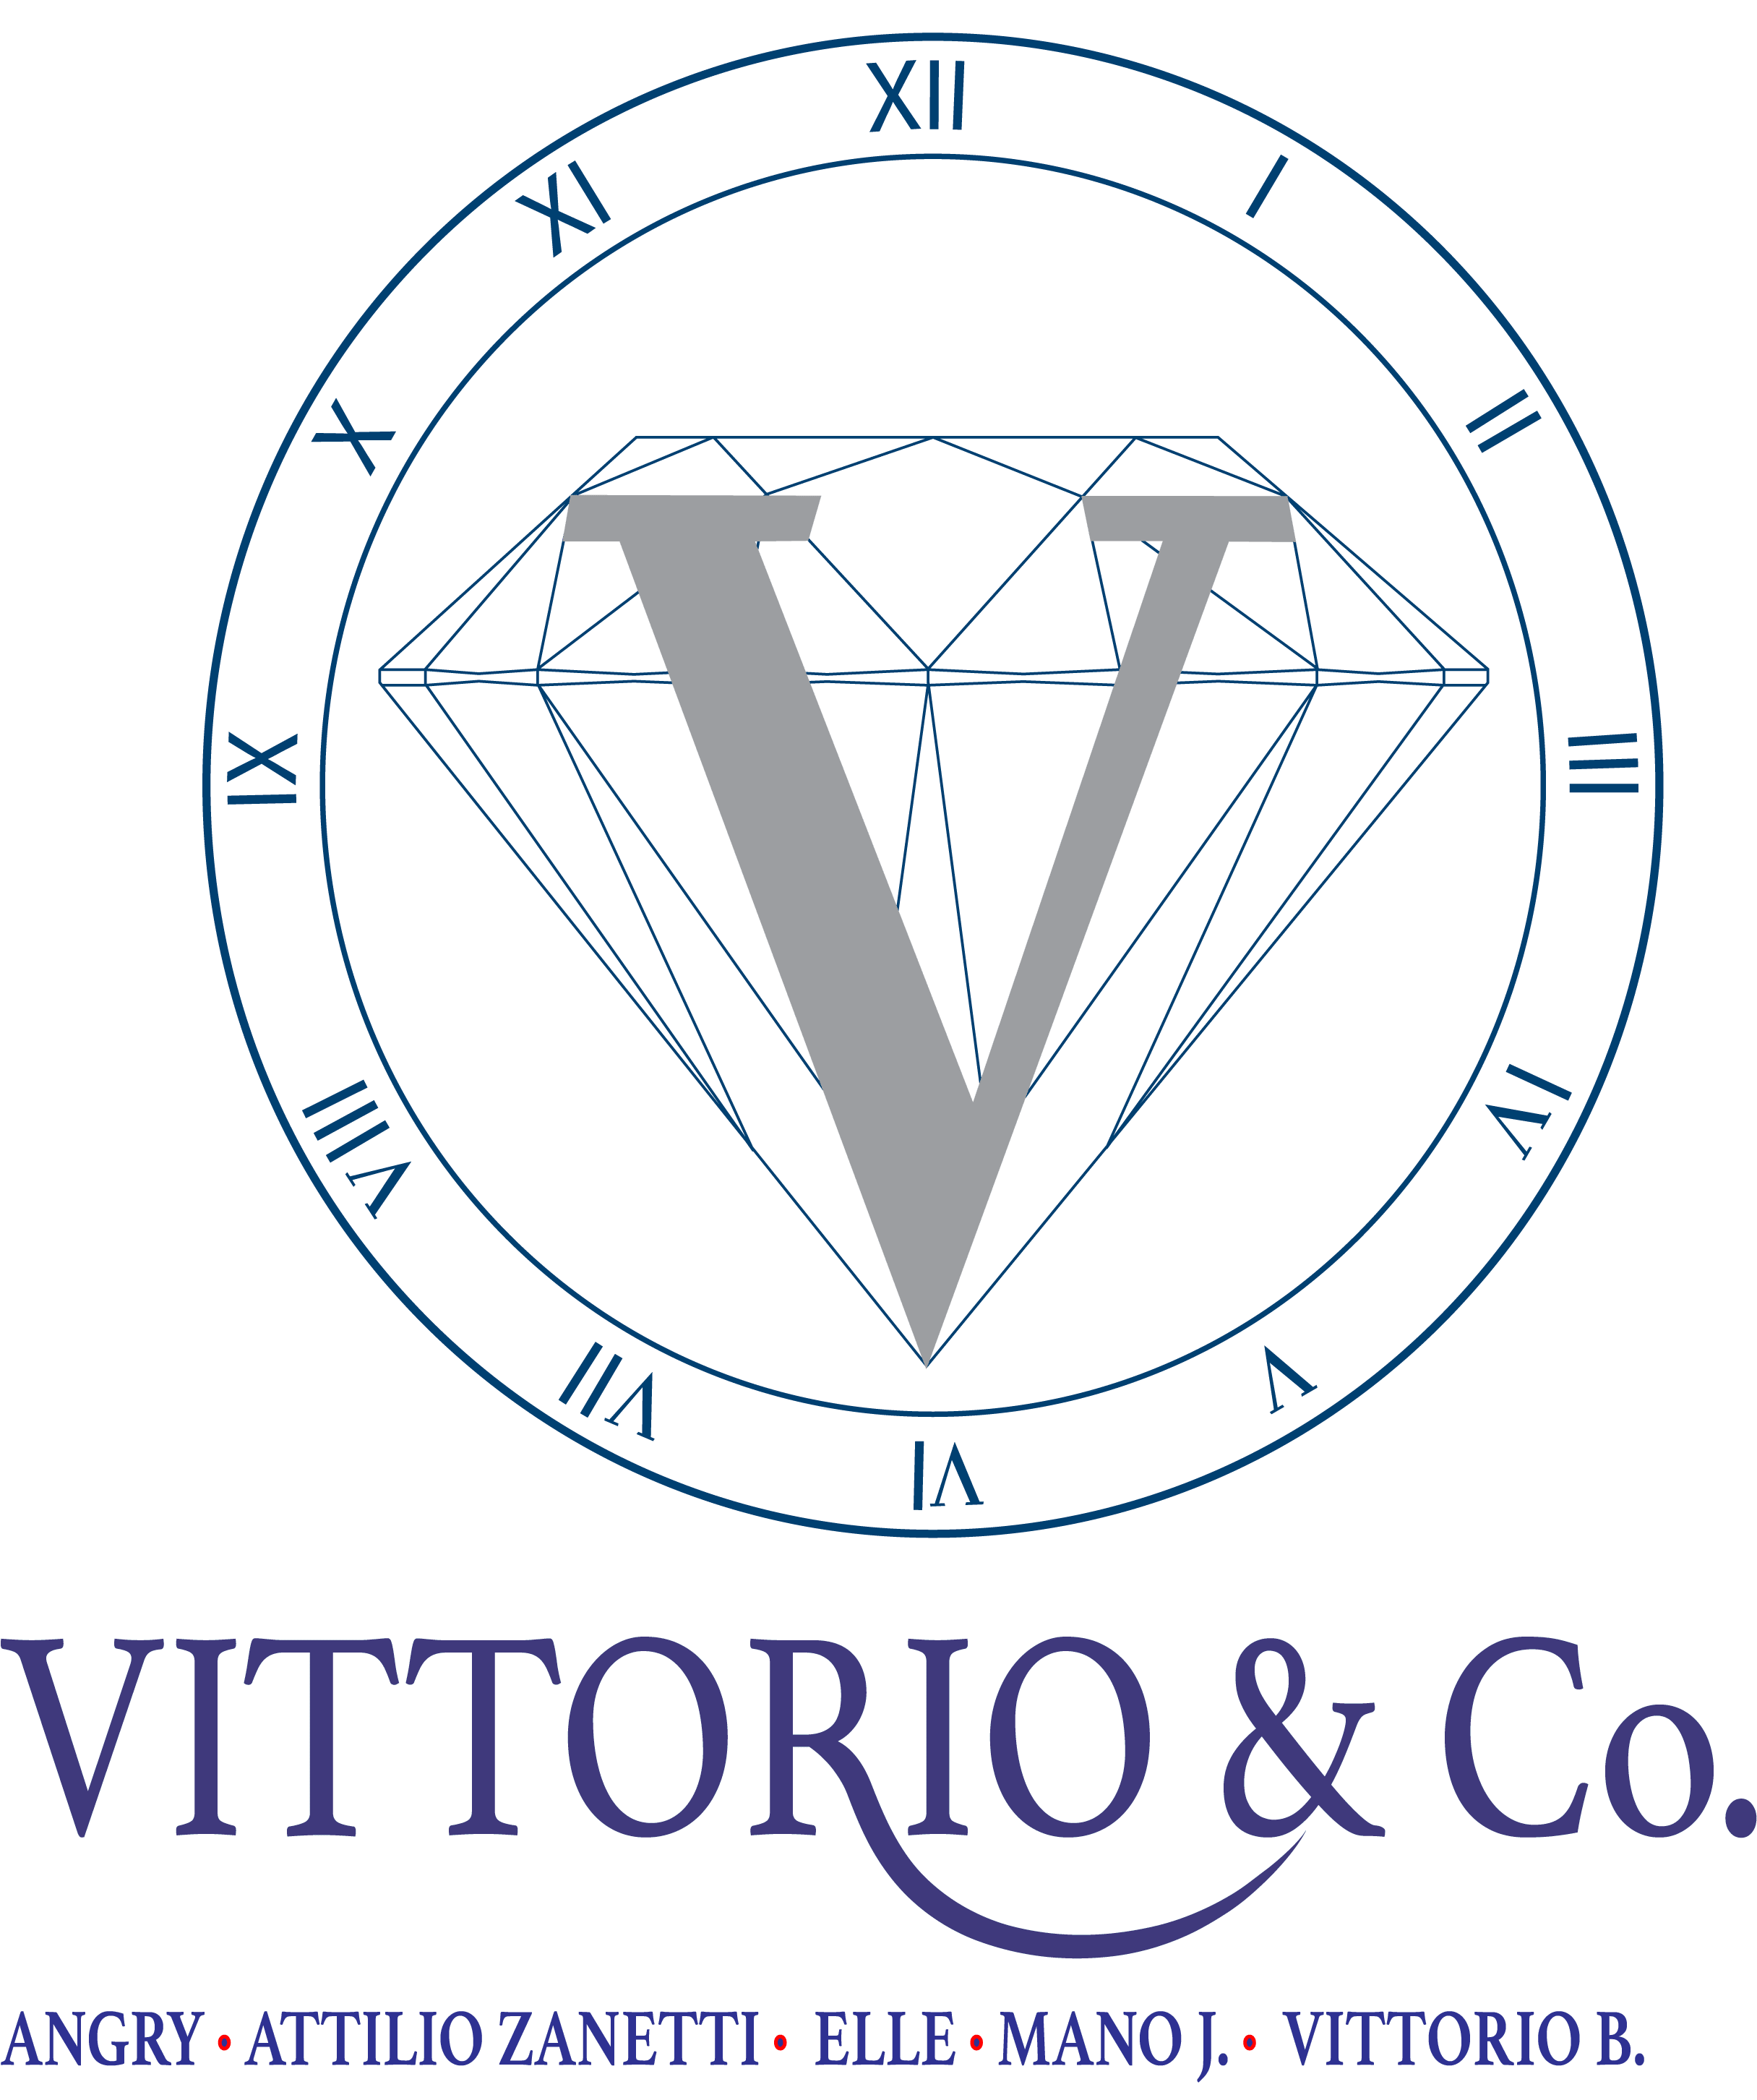 Vittorio & Co. logo